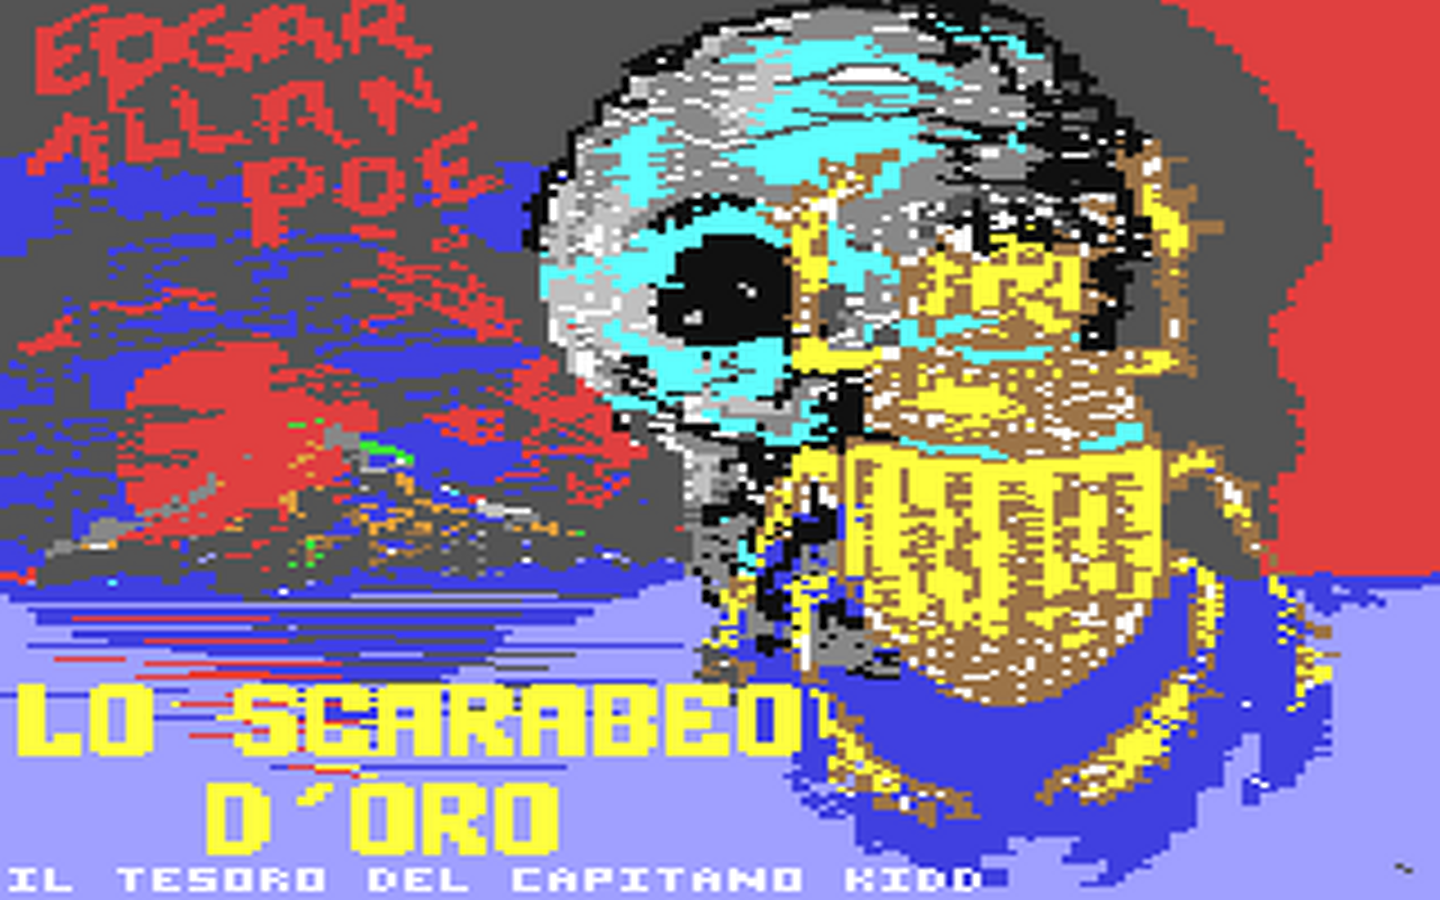 C64 GameBase Scarabeo_d'Oro,_Lo_-_Il_Tesoro_del_Capitano_Kidd Edisoft_S.r.l./Adventure_Time 1986